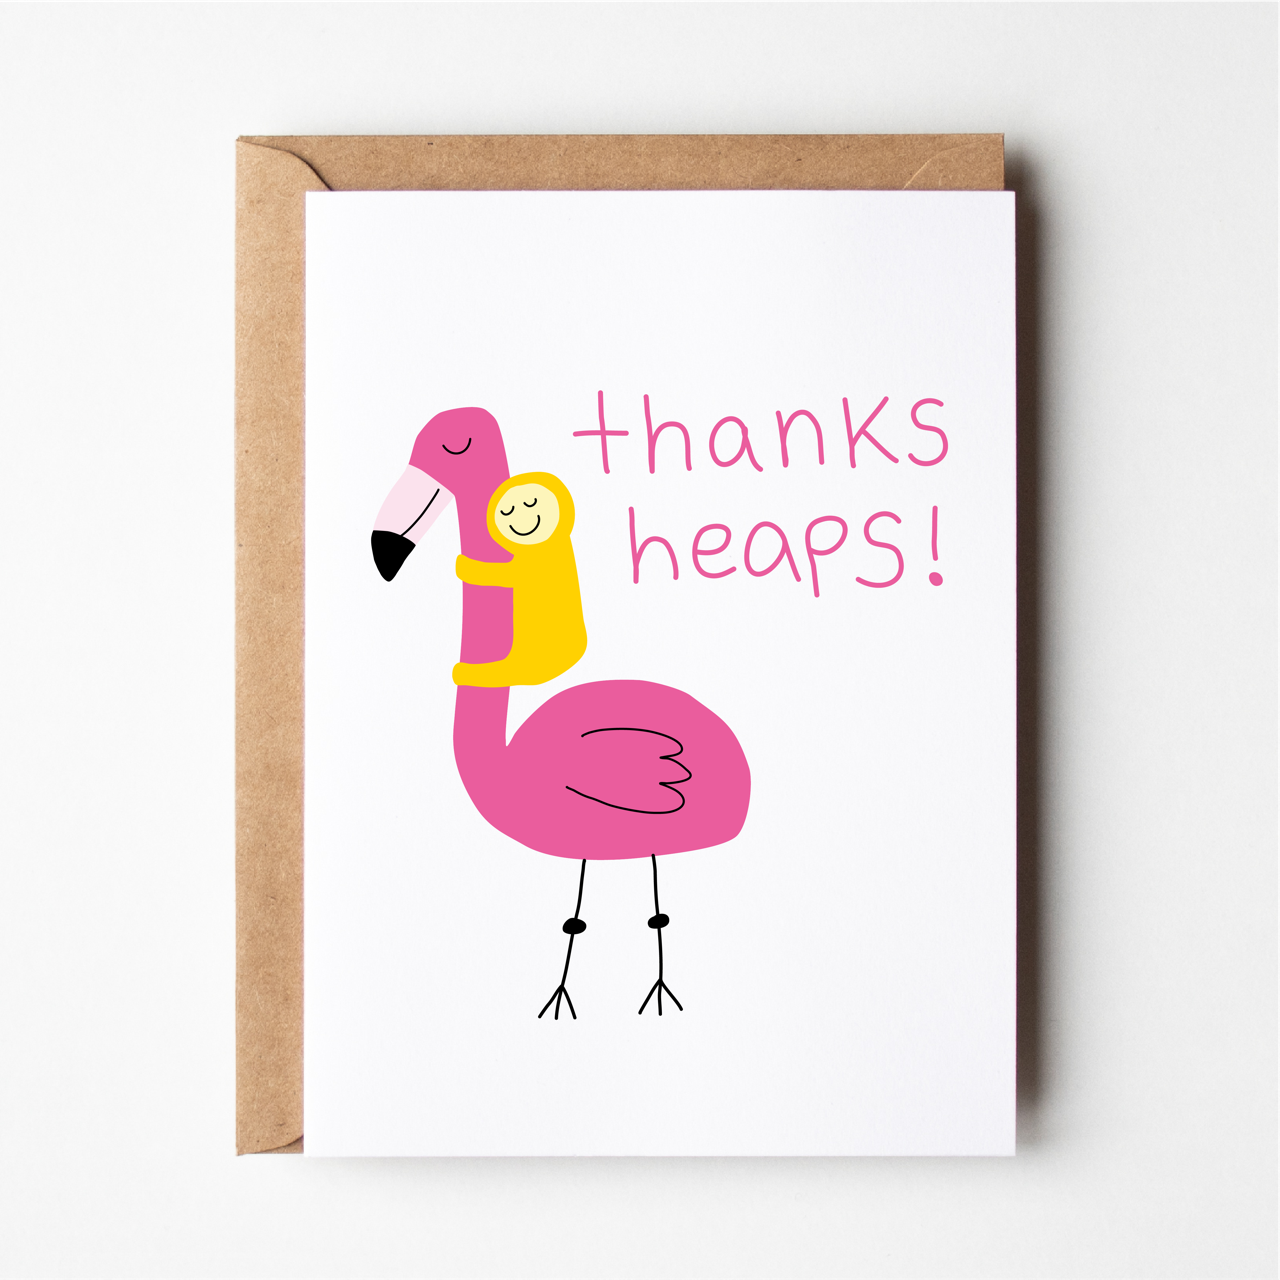 Thanks heaps flamingo